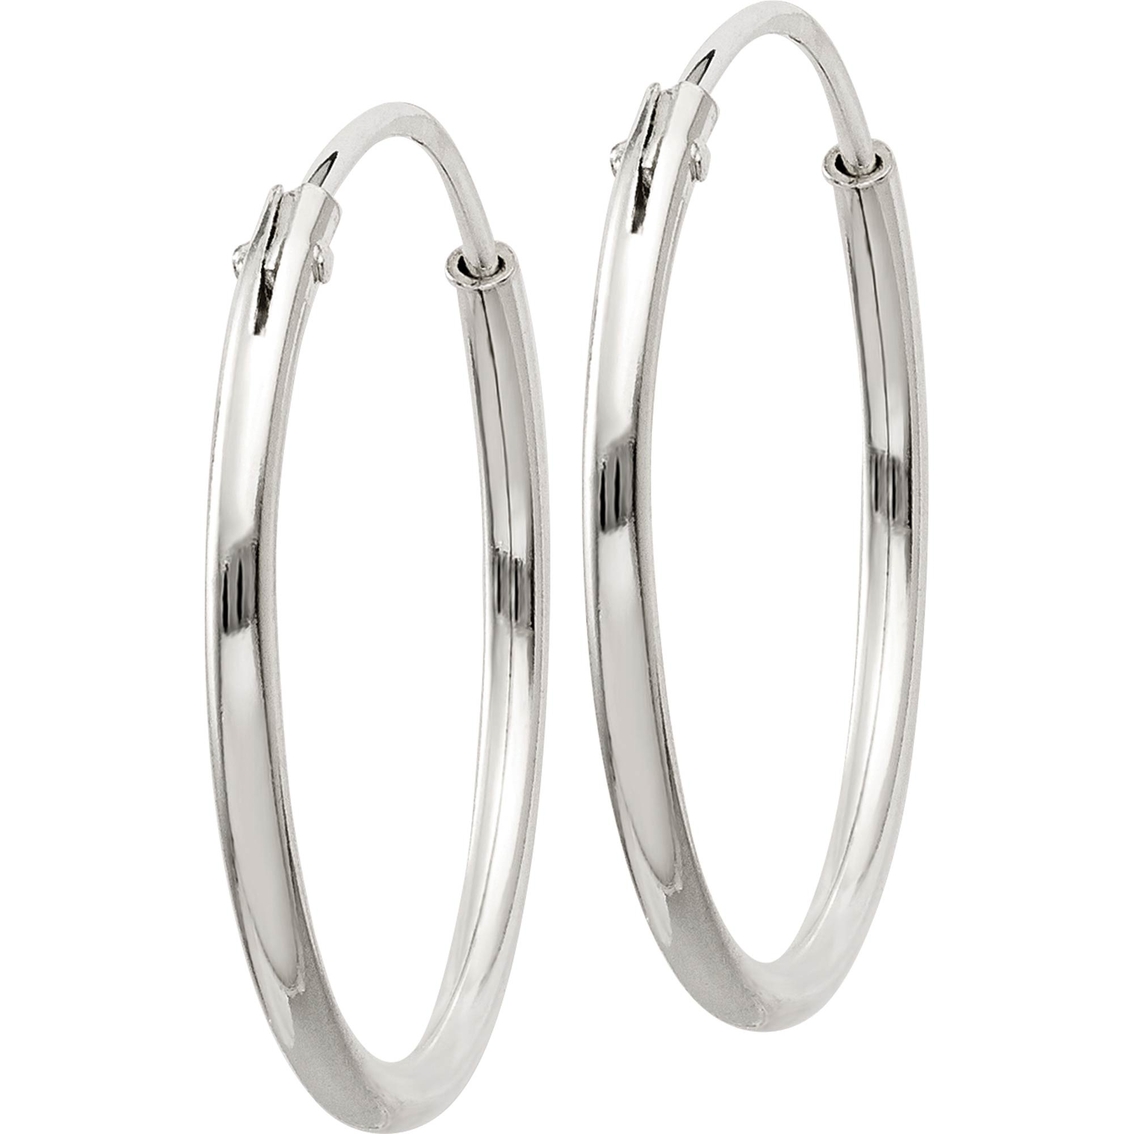 Sterling Silver Endless Hoop Earrings - Image 2 of 2